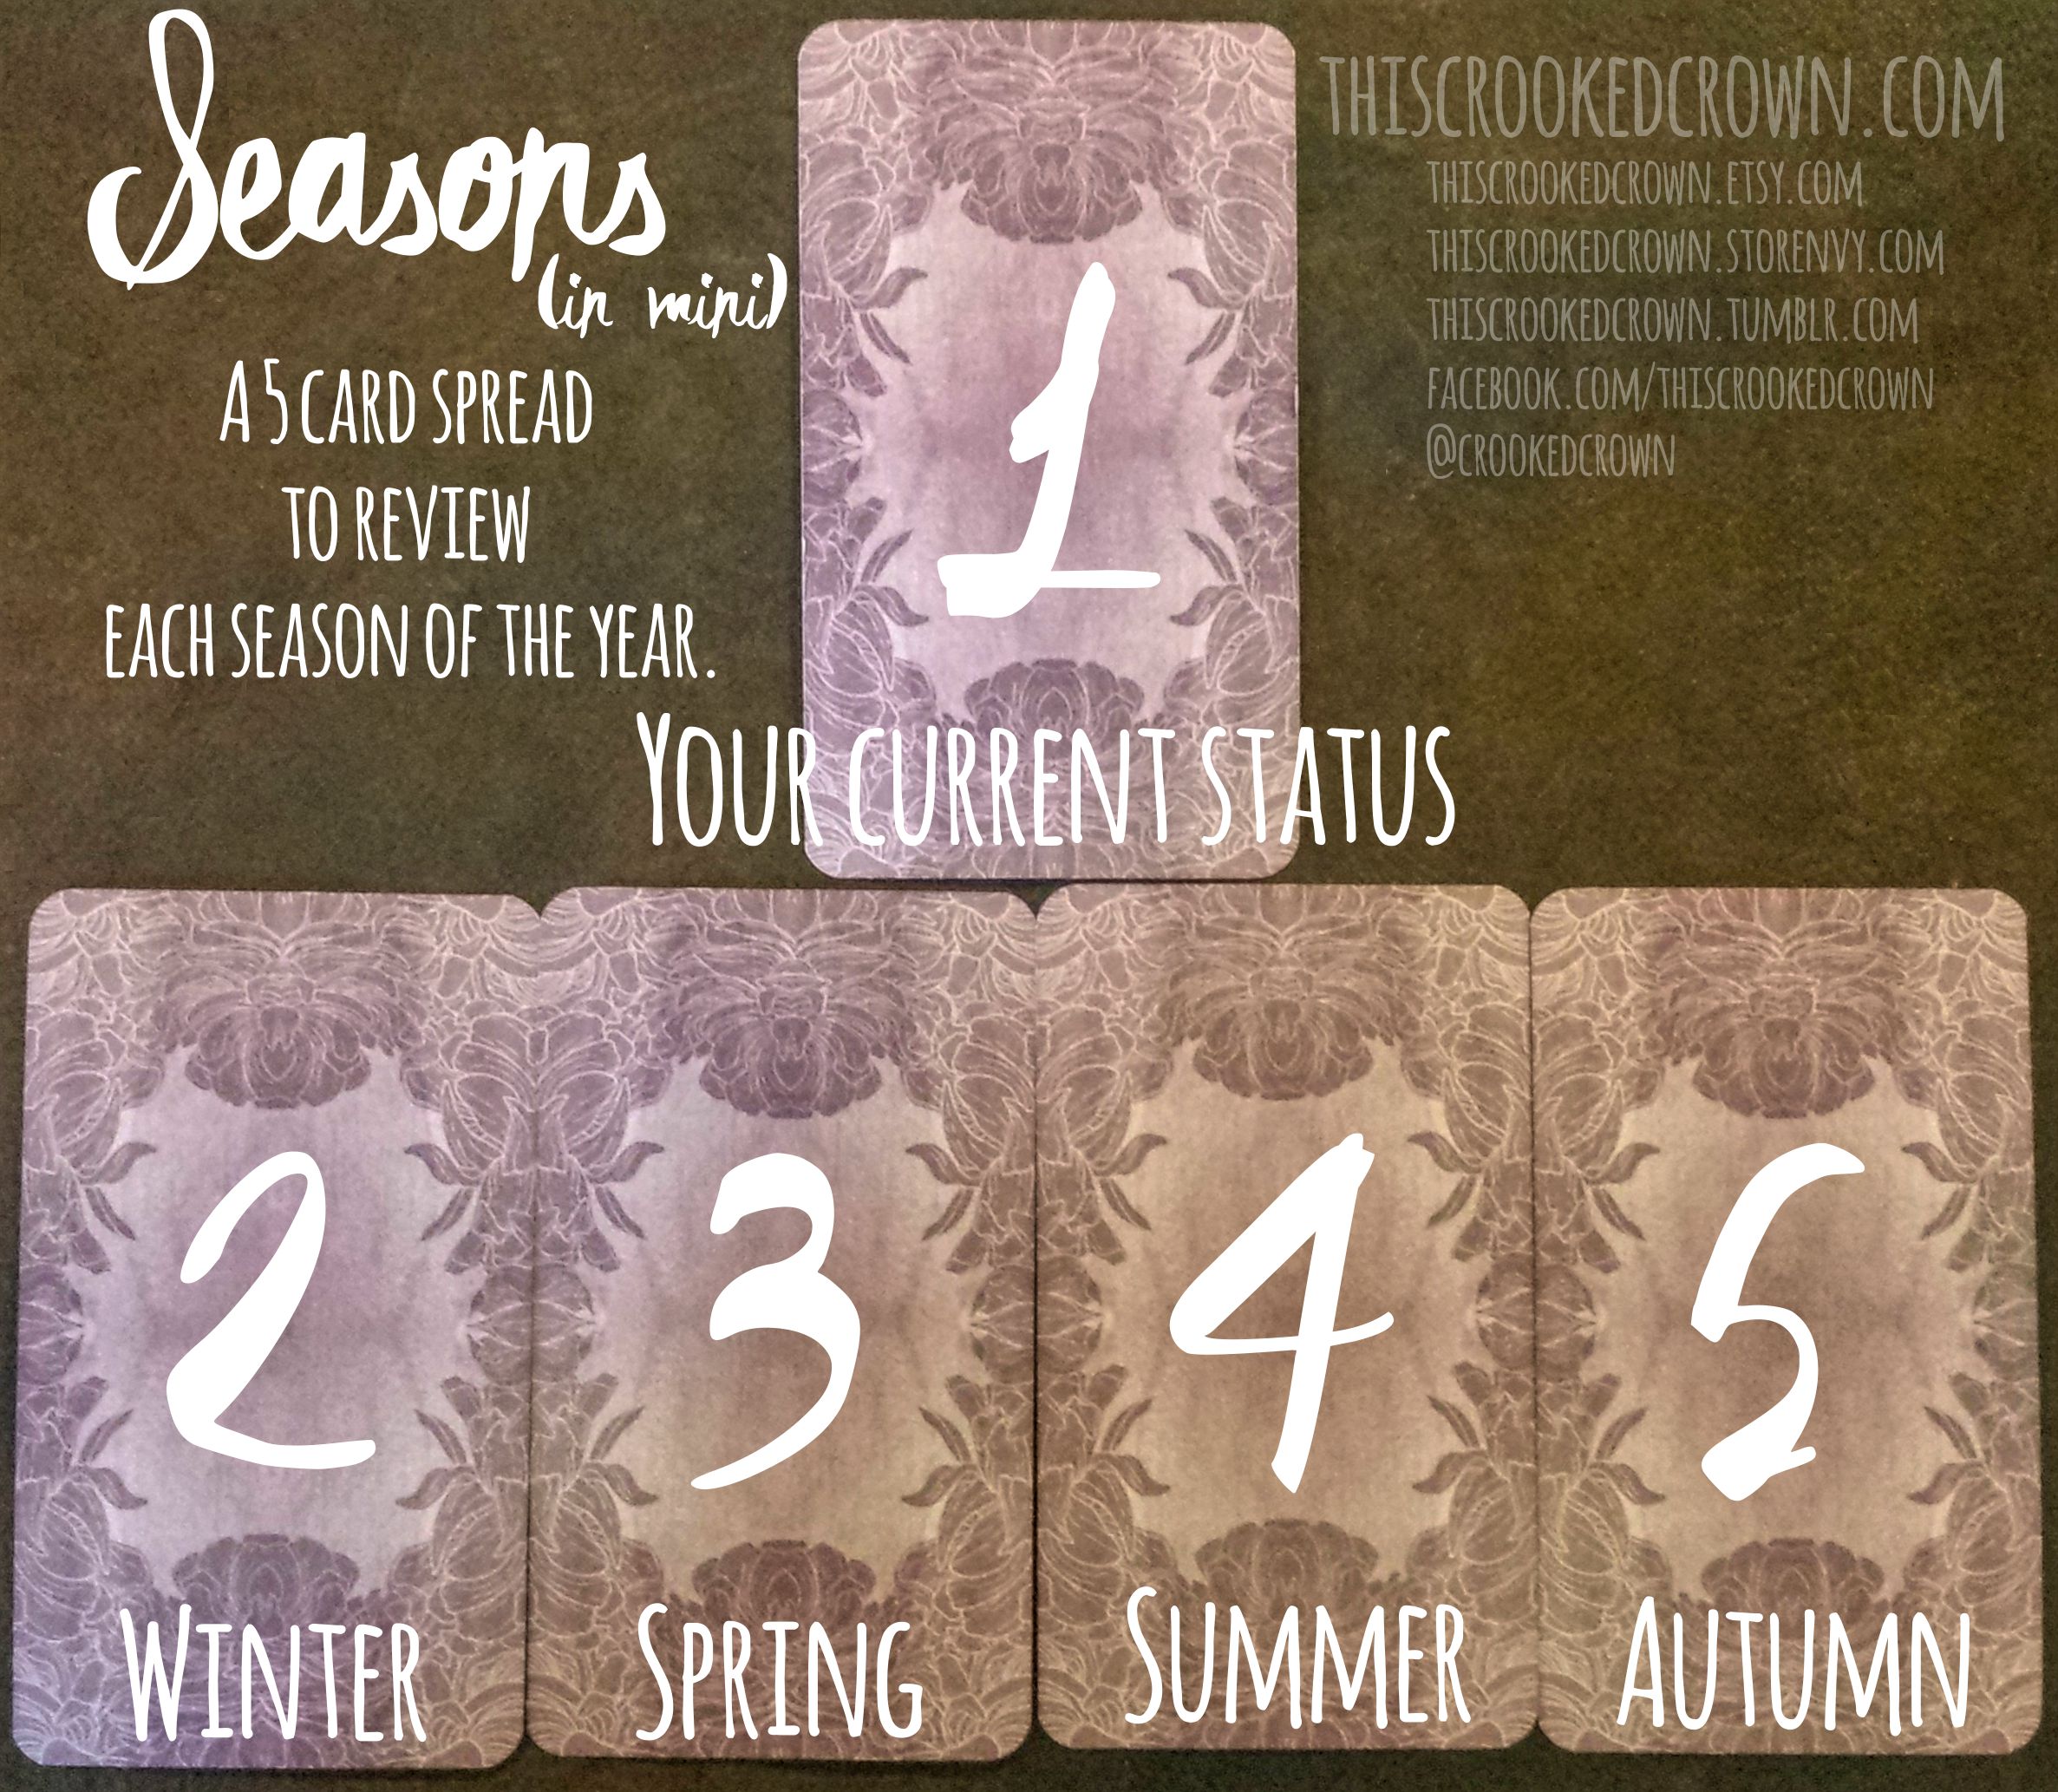 the-seasons-in-mini-01